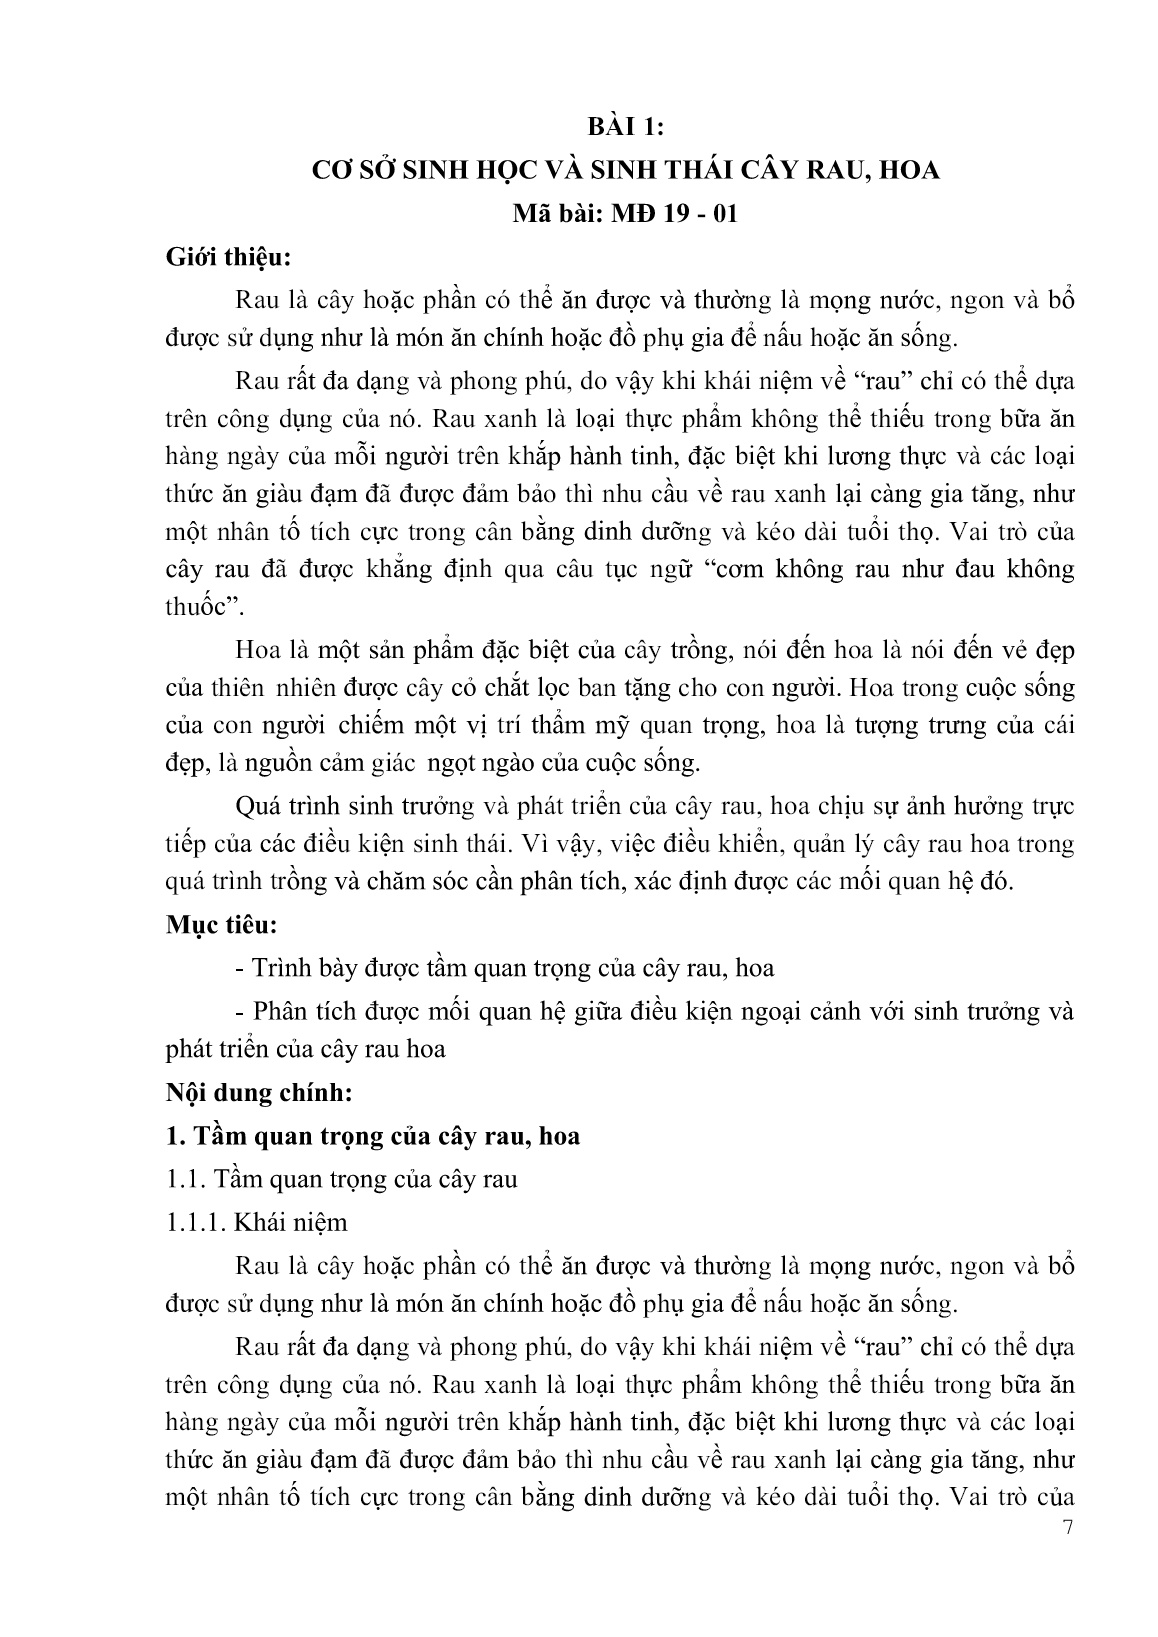 Giáo trình Kỹ thuật canh tác rau, hoa - Phần 1 (Trình độ: Cao đẳng) trang 9